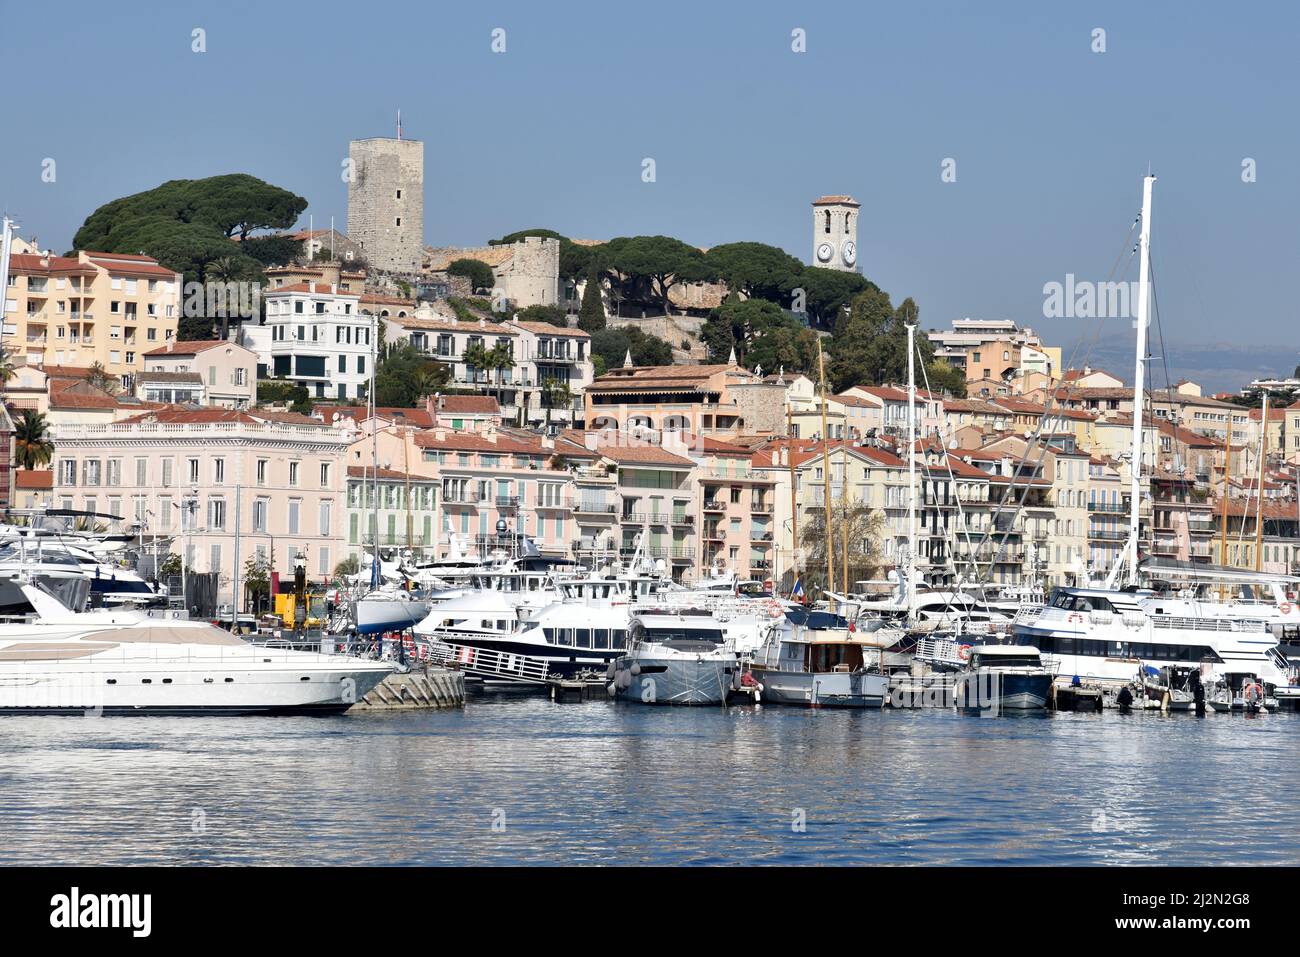 Frankreich, französische riviera, Cannes, das Suquet ist der älteste Teil der Stadt, mit Blick auf den Hafen und das mittelmeer. Stockfoto